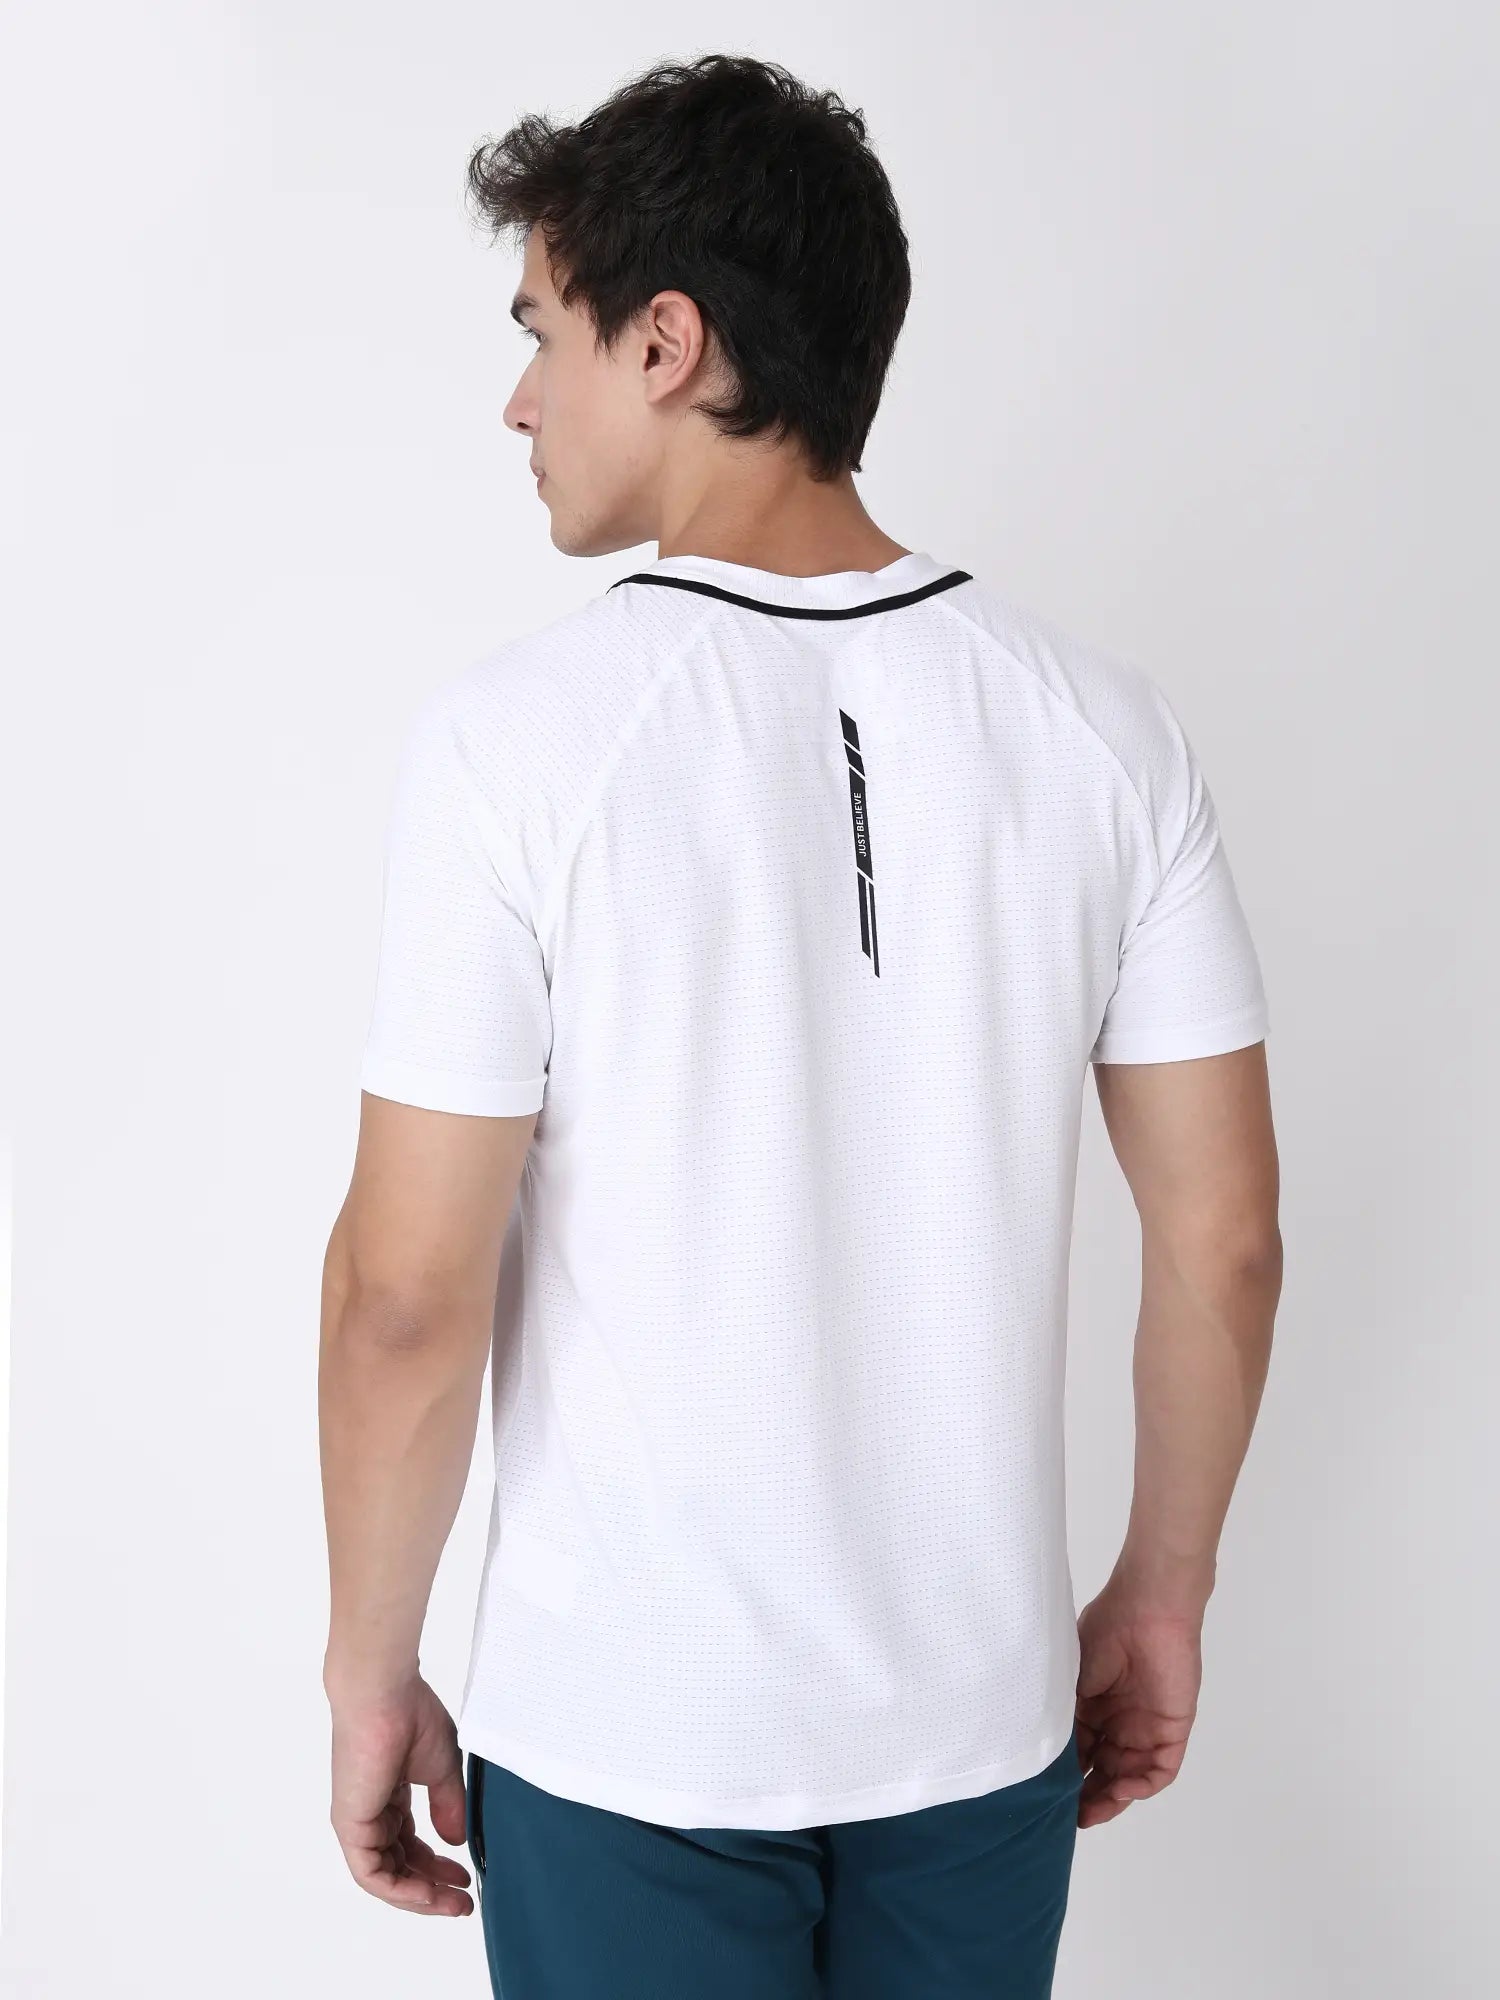 Running T-shirts (White)